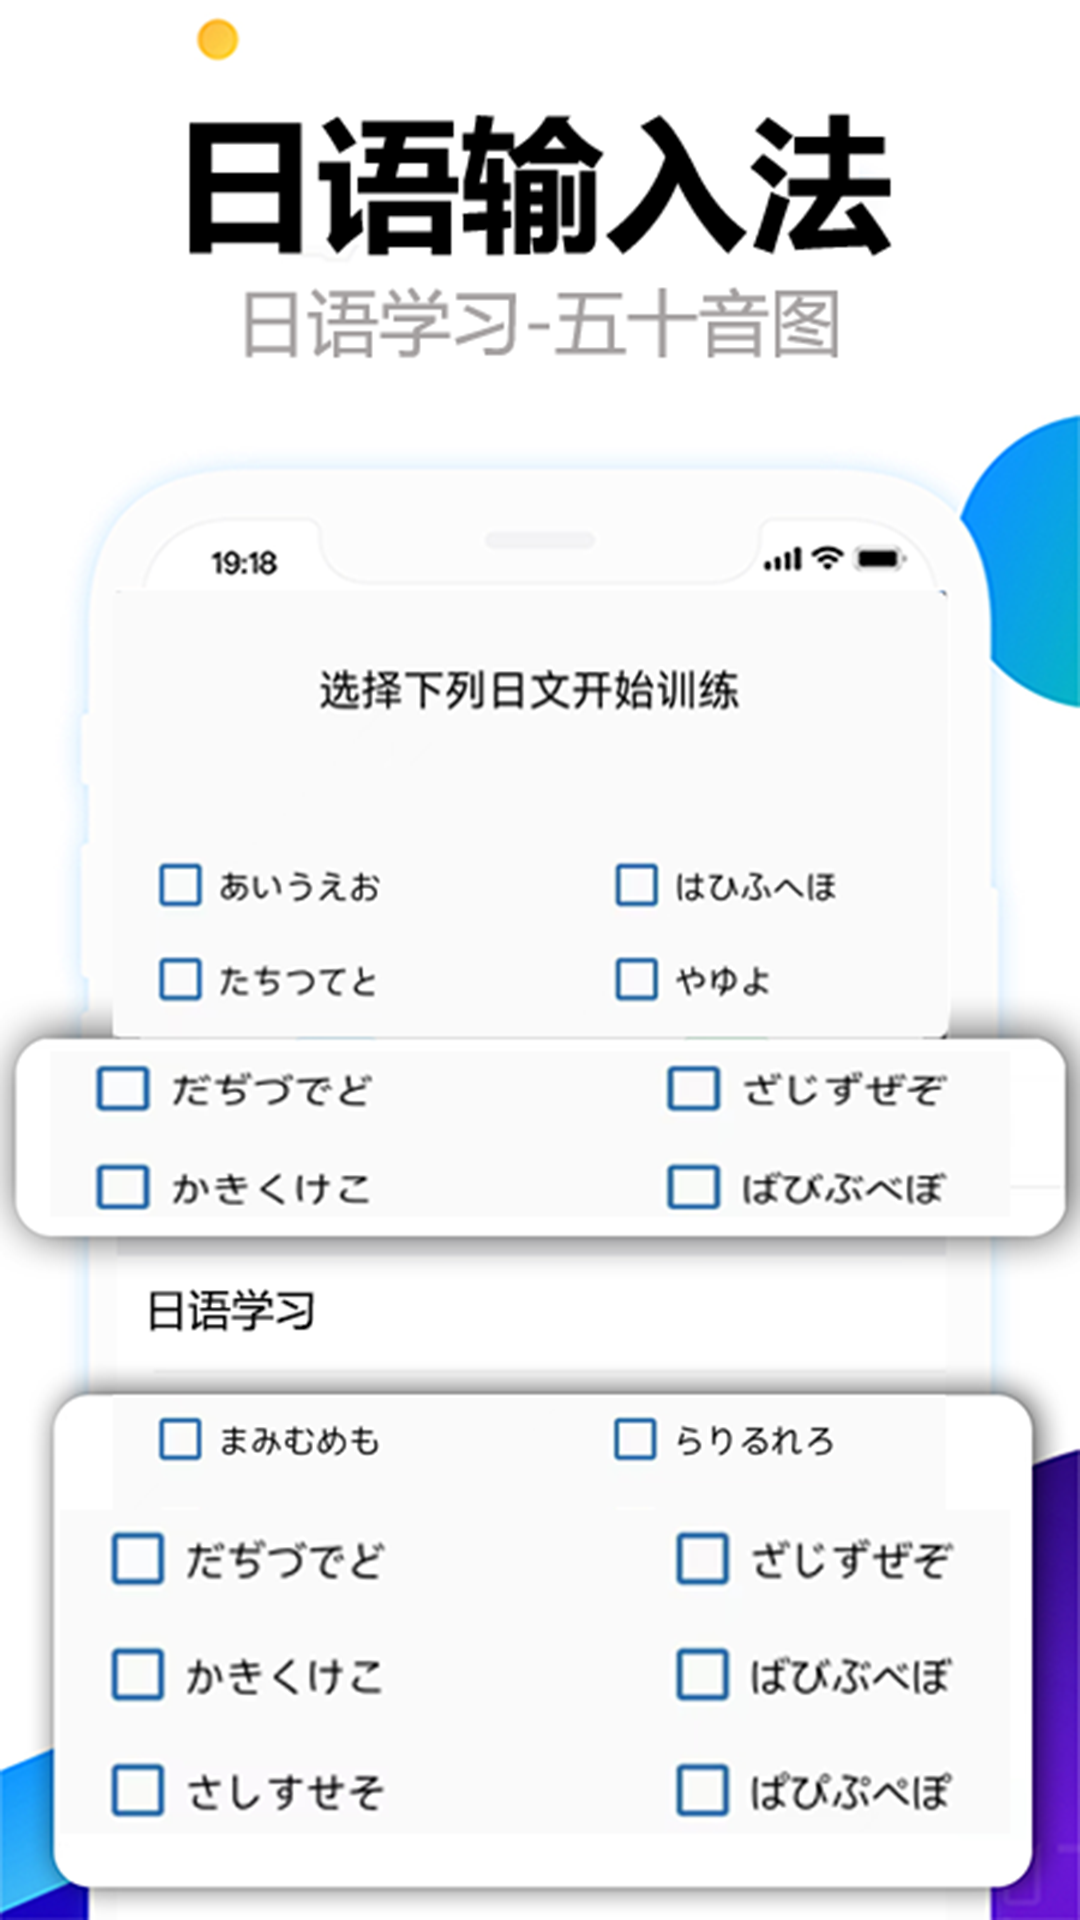 日语输入法五十音图v1.0.0